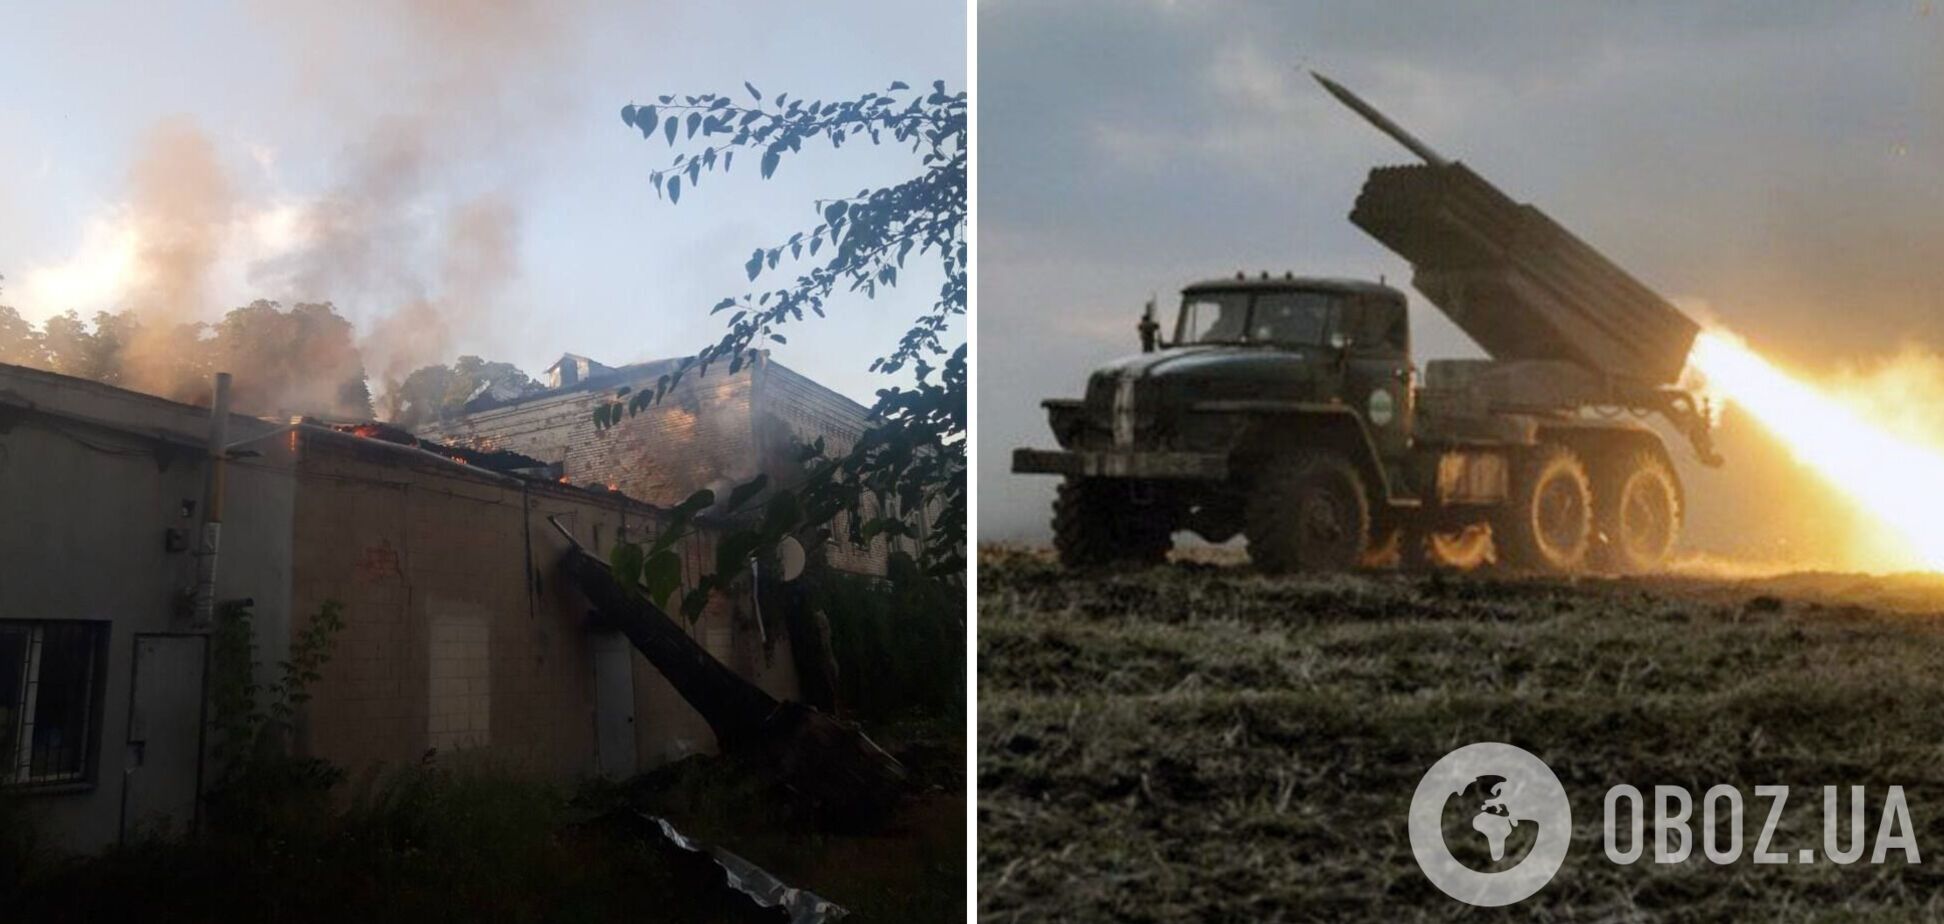 Войска РФ ударили 'Градами' по центру Гуляйполя на Запорожье, есть погибшие и много разрушений. Фото